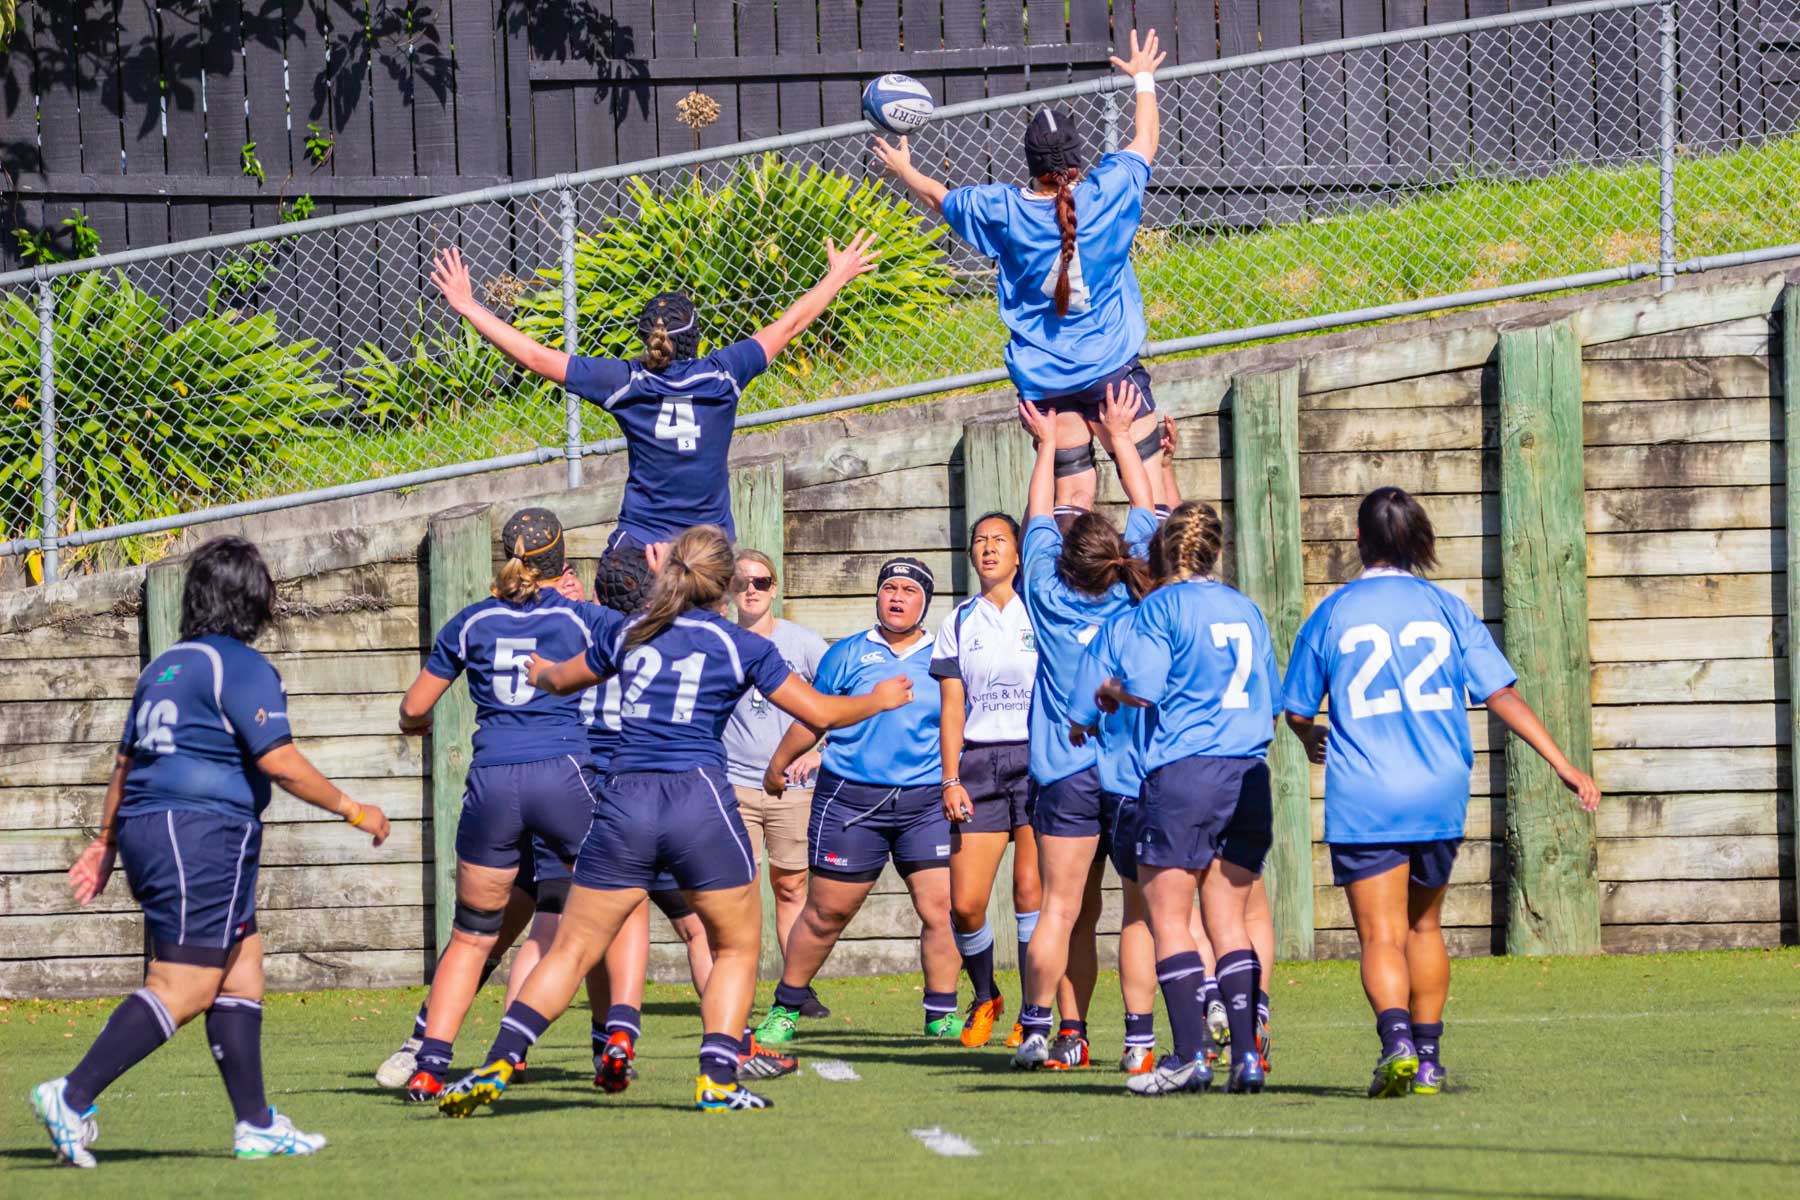 Durant un match, les deux équipes féminines de rugby tentent d’attraper le ballon lancé dans les airs.